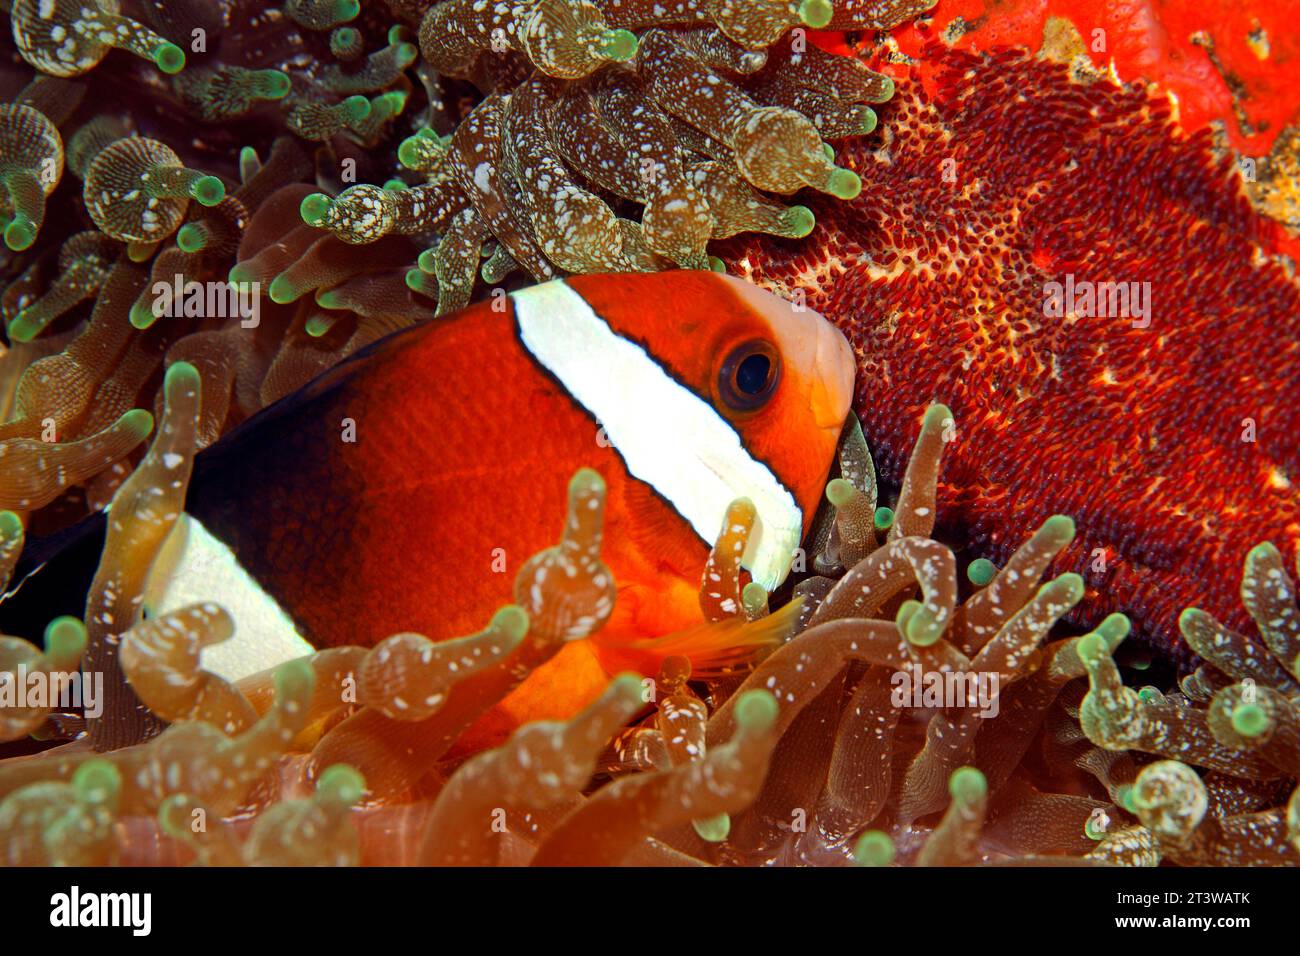 Clarks Anemonefisch, Amphiprion Clarkii. Fische bewachen rote Eier. In Bubble-tip Sea Anemone Entacmaea quadricolor. Tulamben, Bali, Indonesien. Bali-Meer, Stockfoto